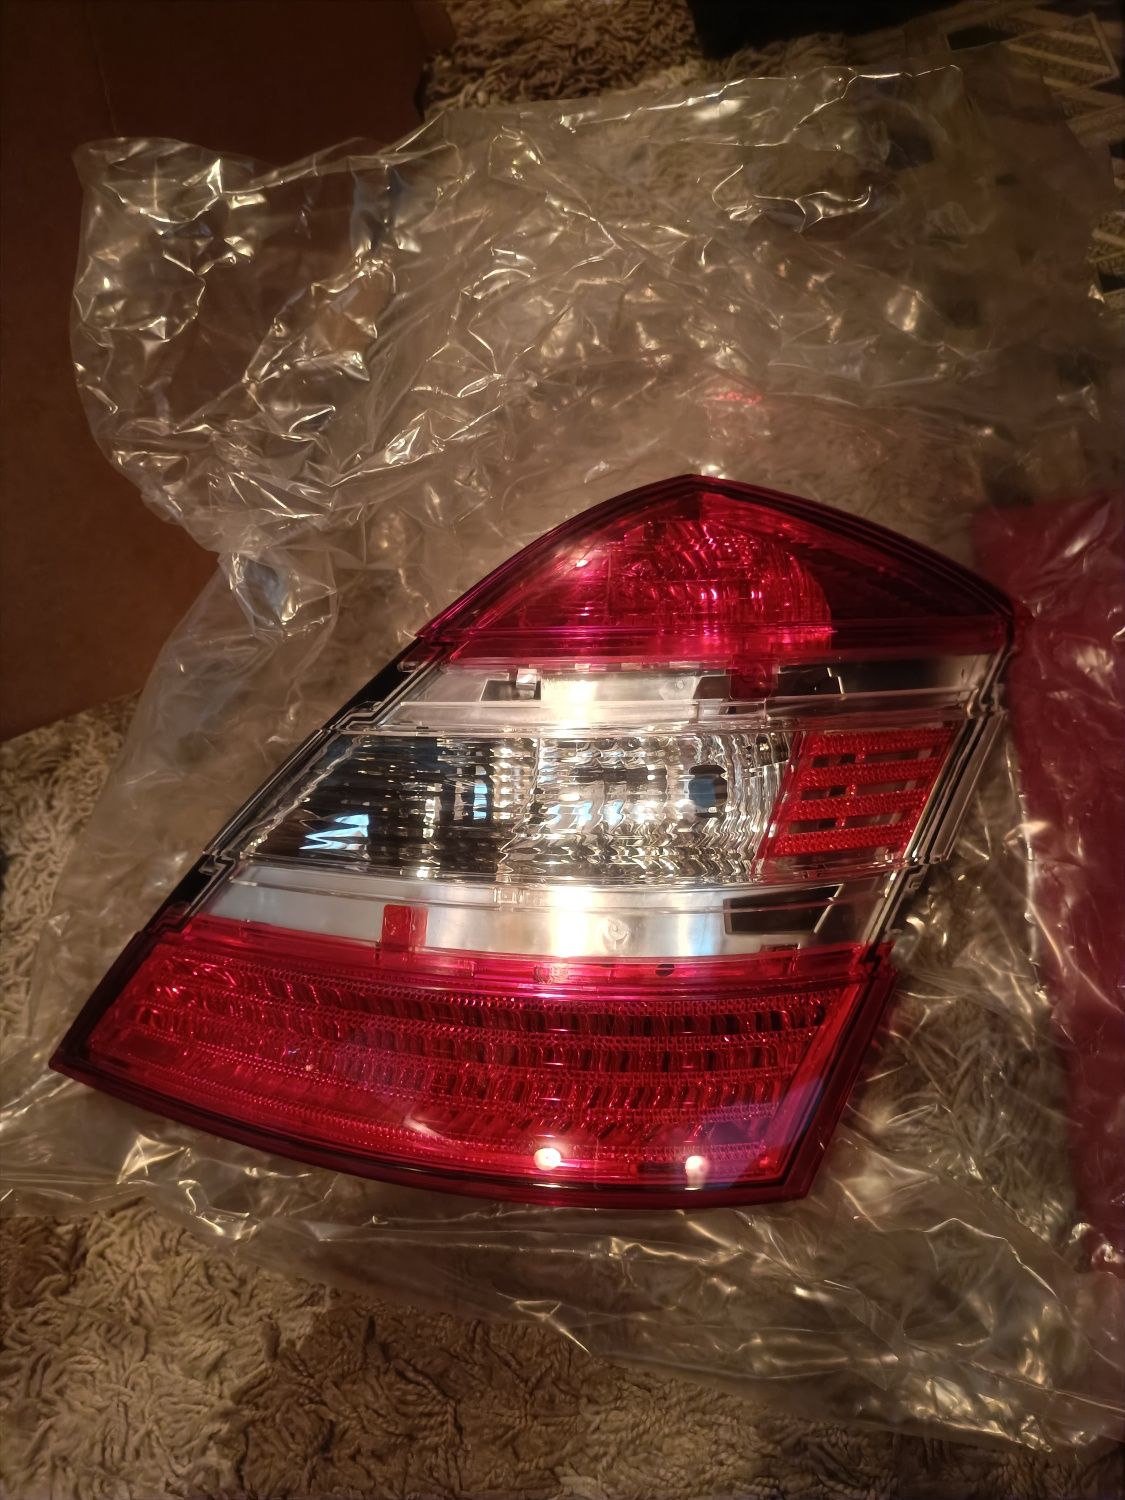 Новый оригинальный правый фонарь на Mercedes W221 светлый и тёмный.